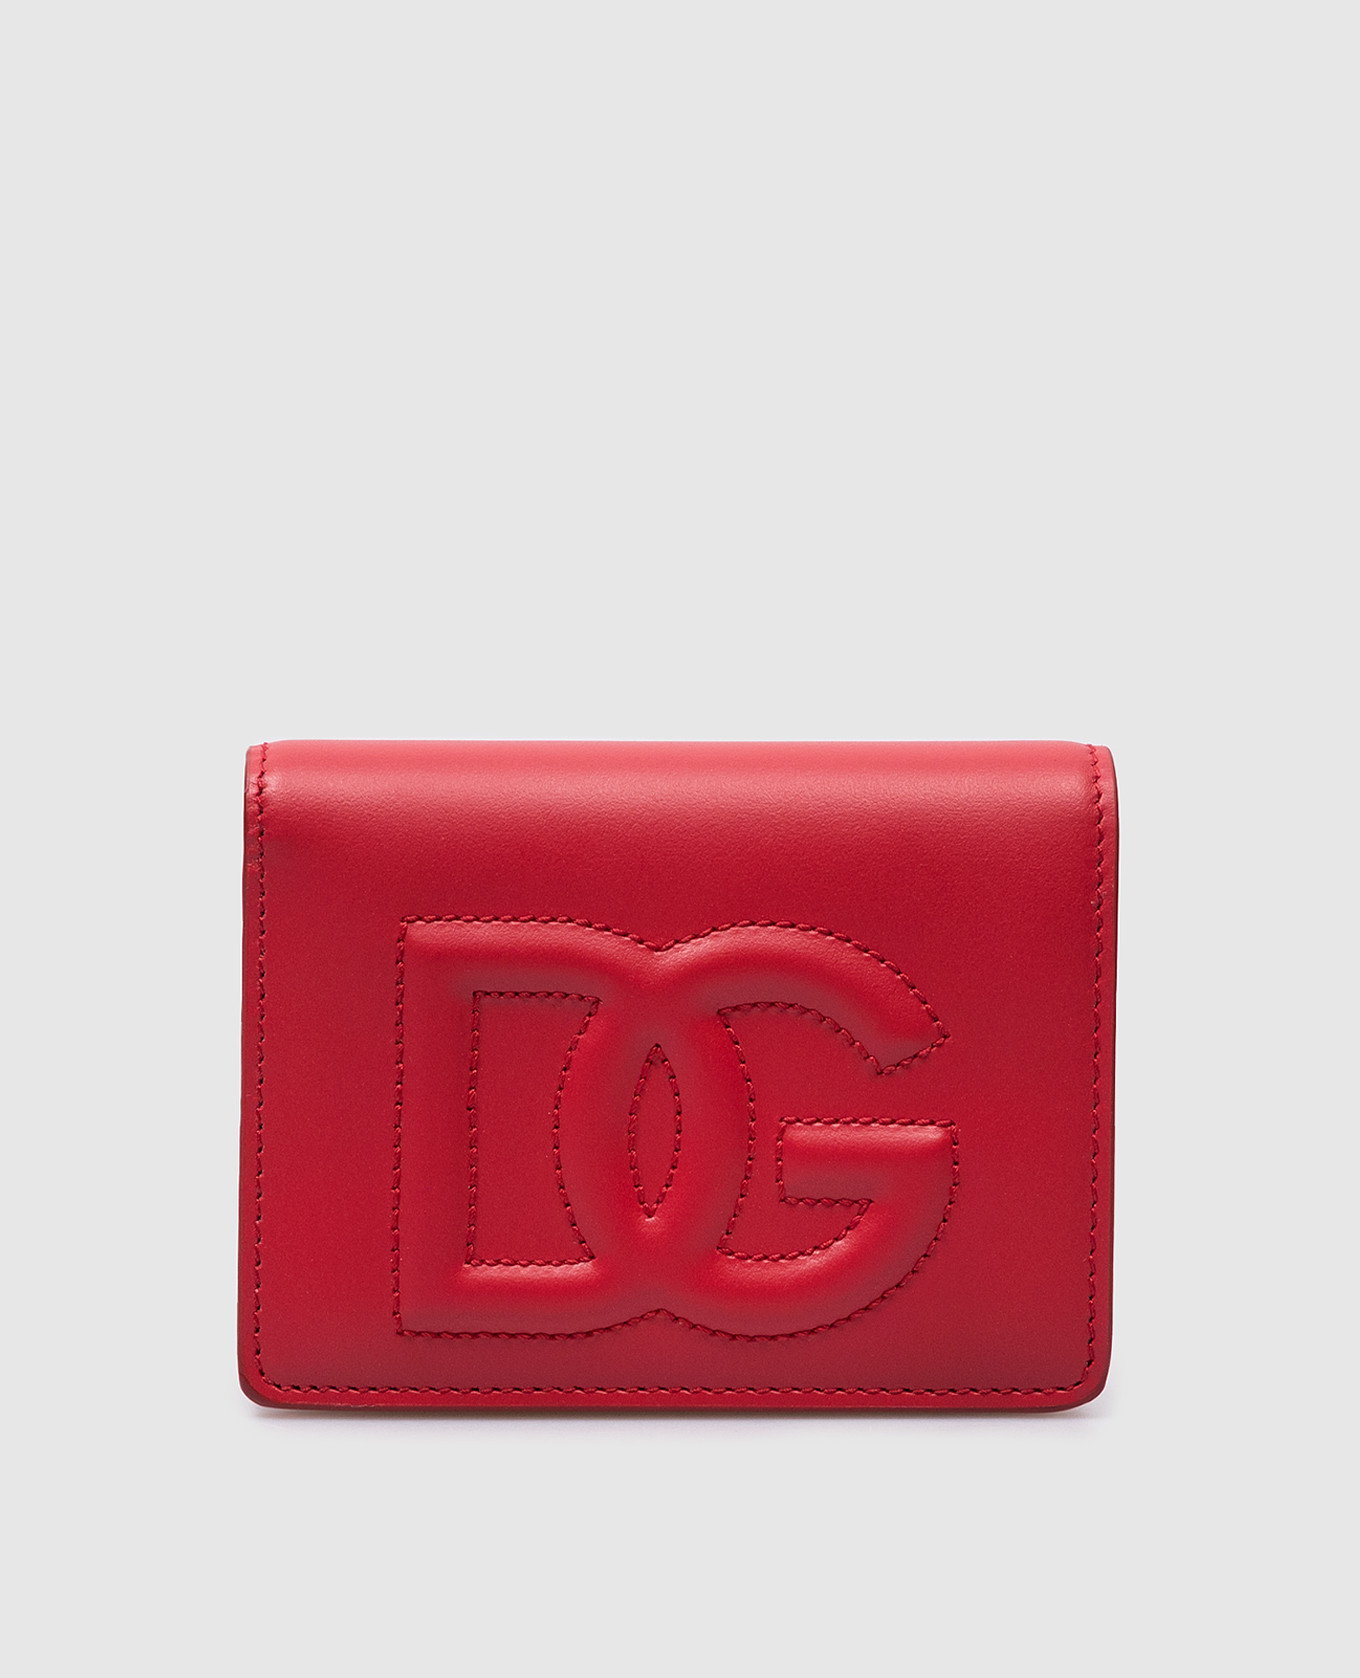 Красный кожаный портмоне с вышивкой логотипа монограммы.